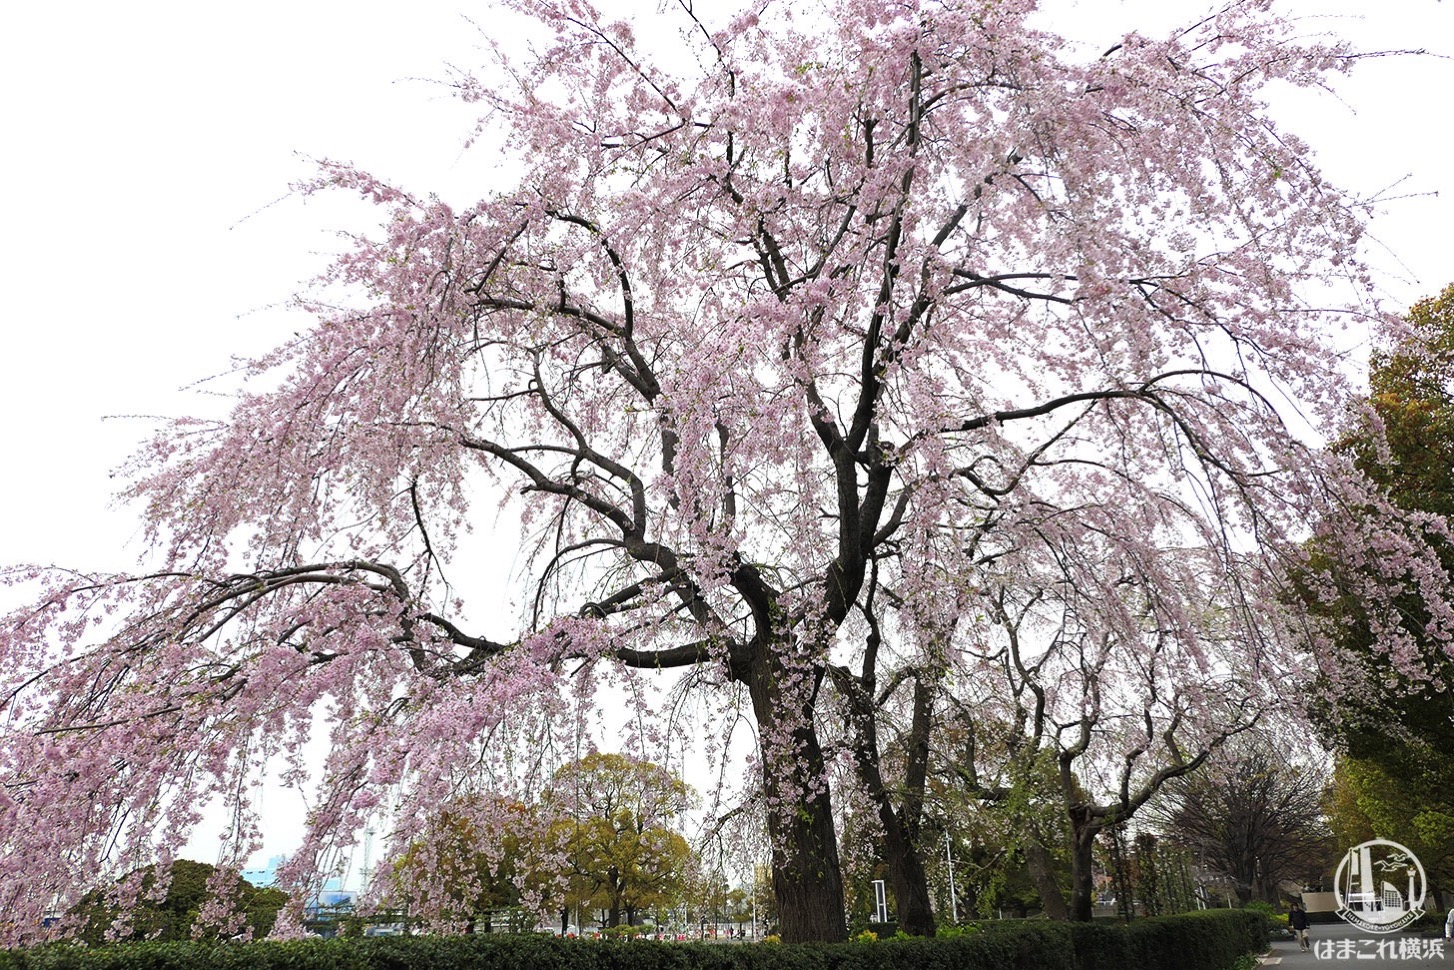 山下公園の「しだれ桜」が満開に！見上げて広がる桜の世界が美しい